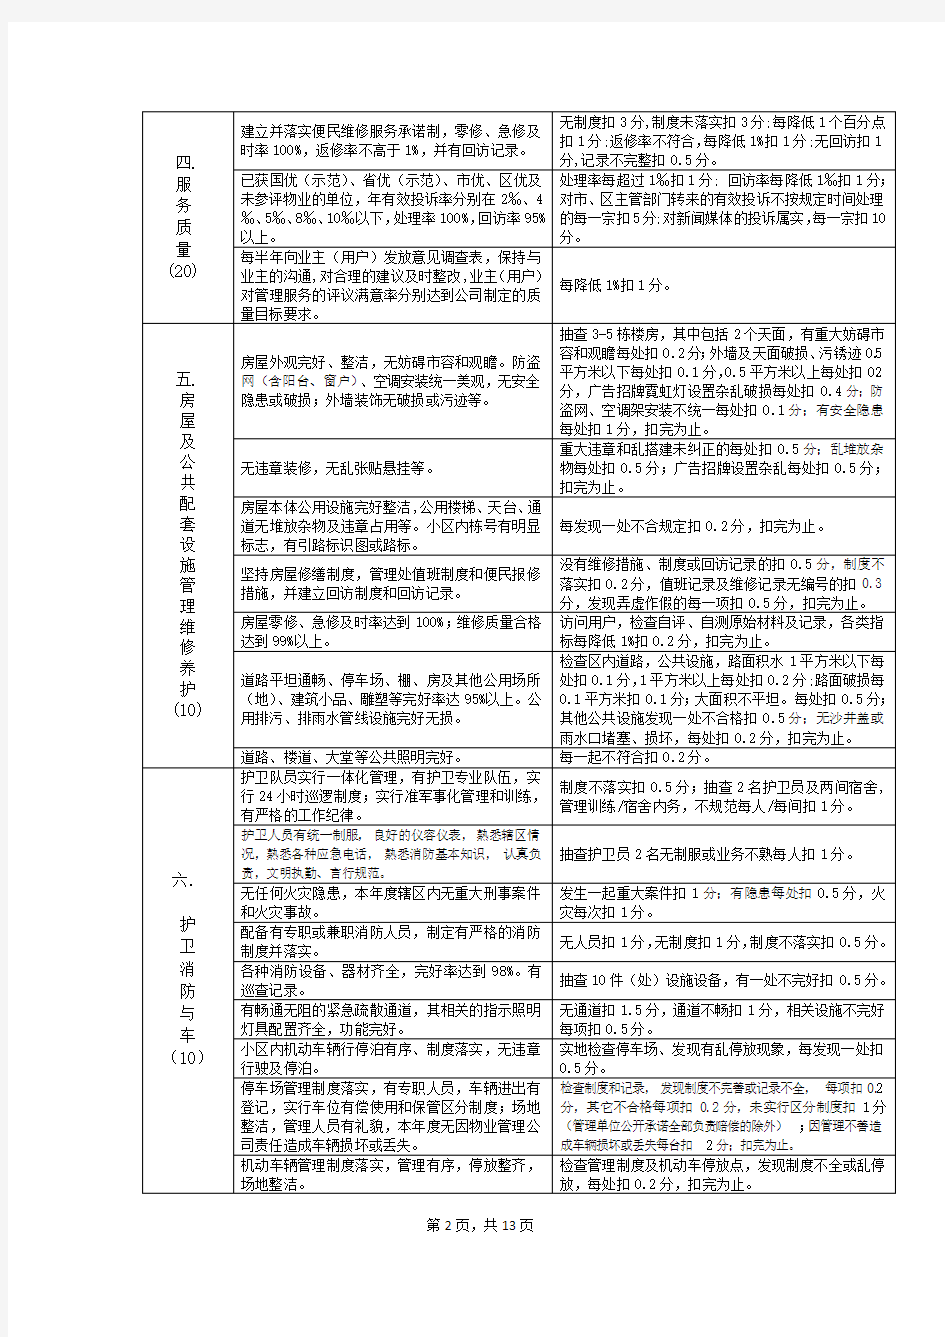 深圳保利物业管理公司物业服务质量检查标准(最新整理)